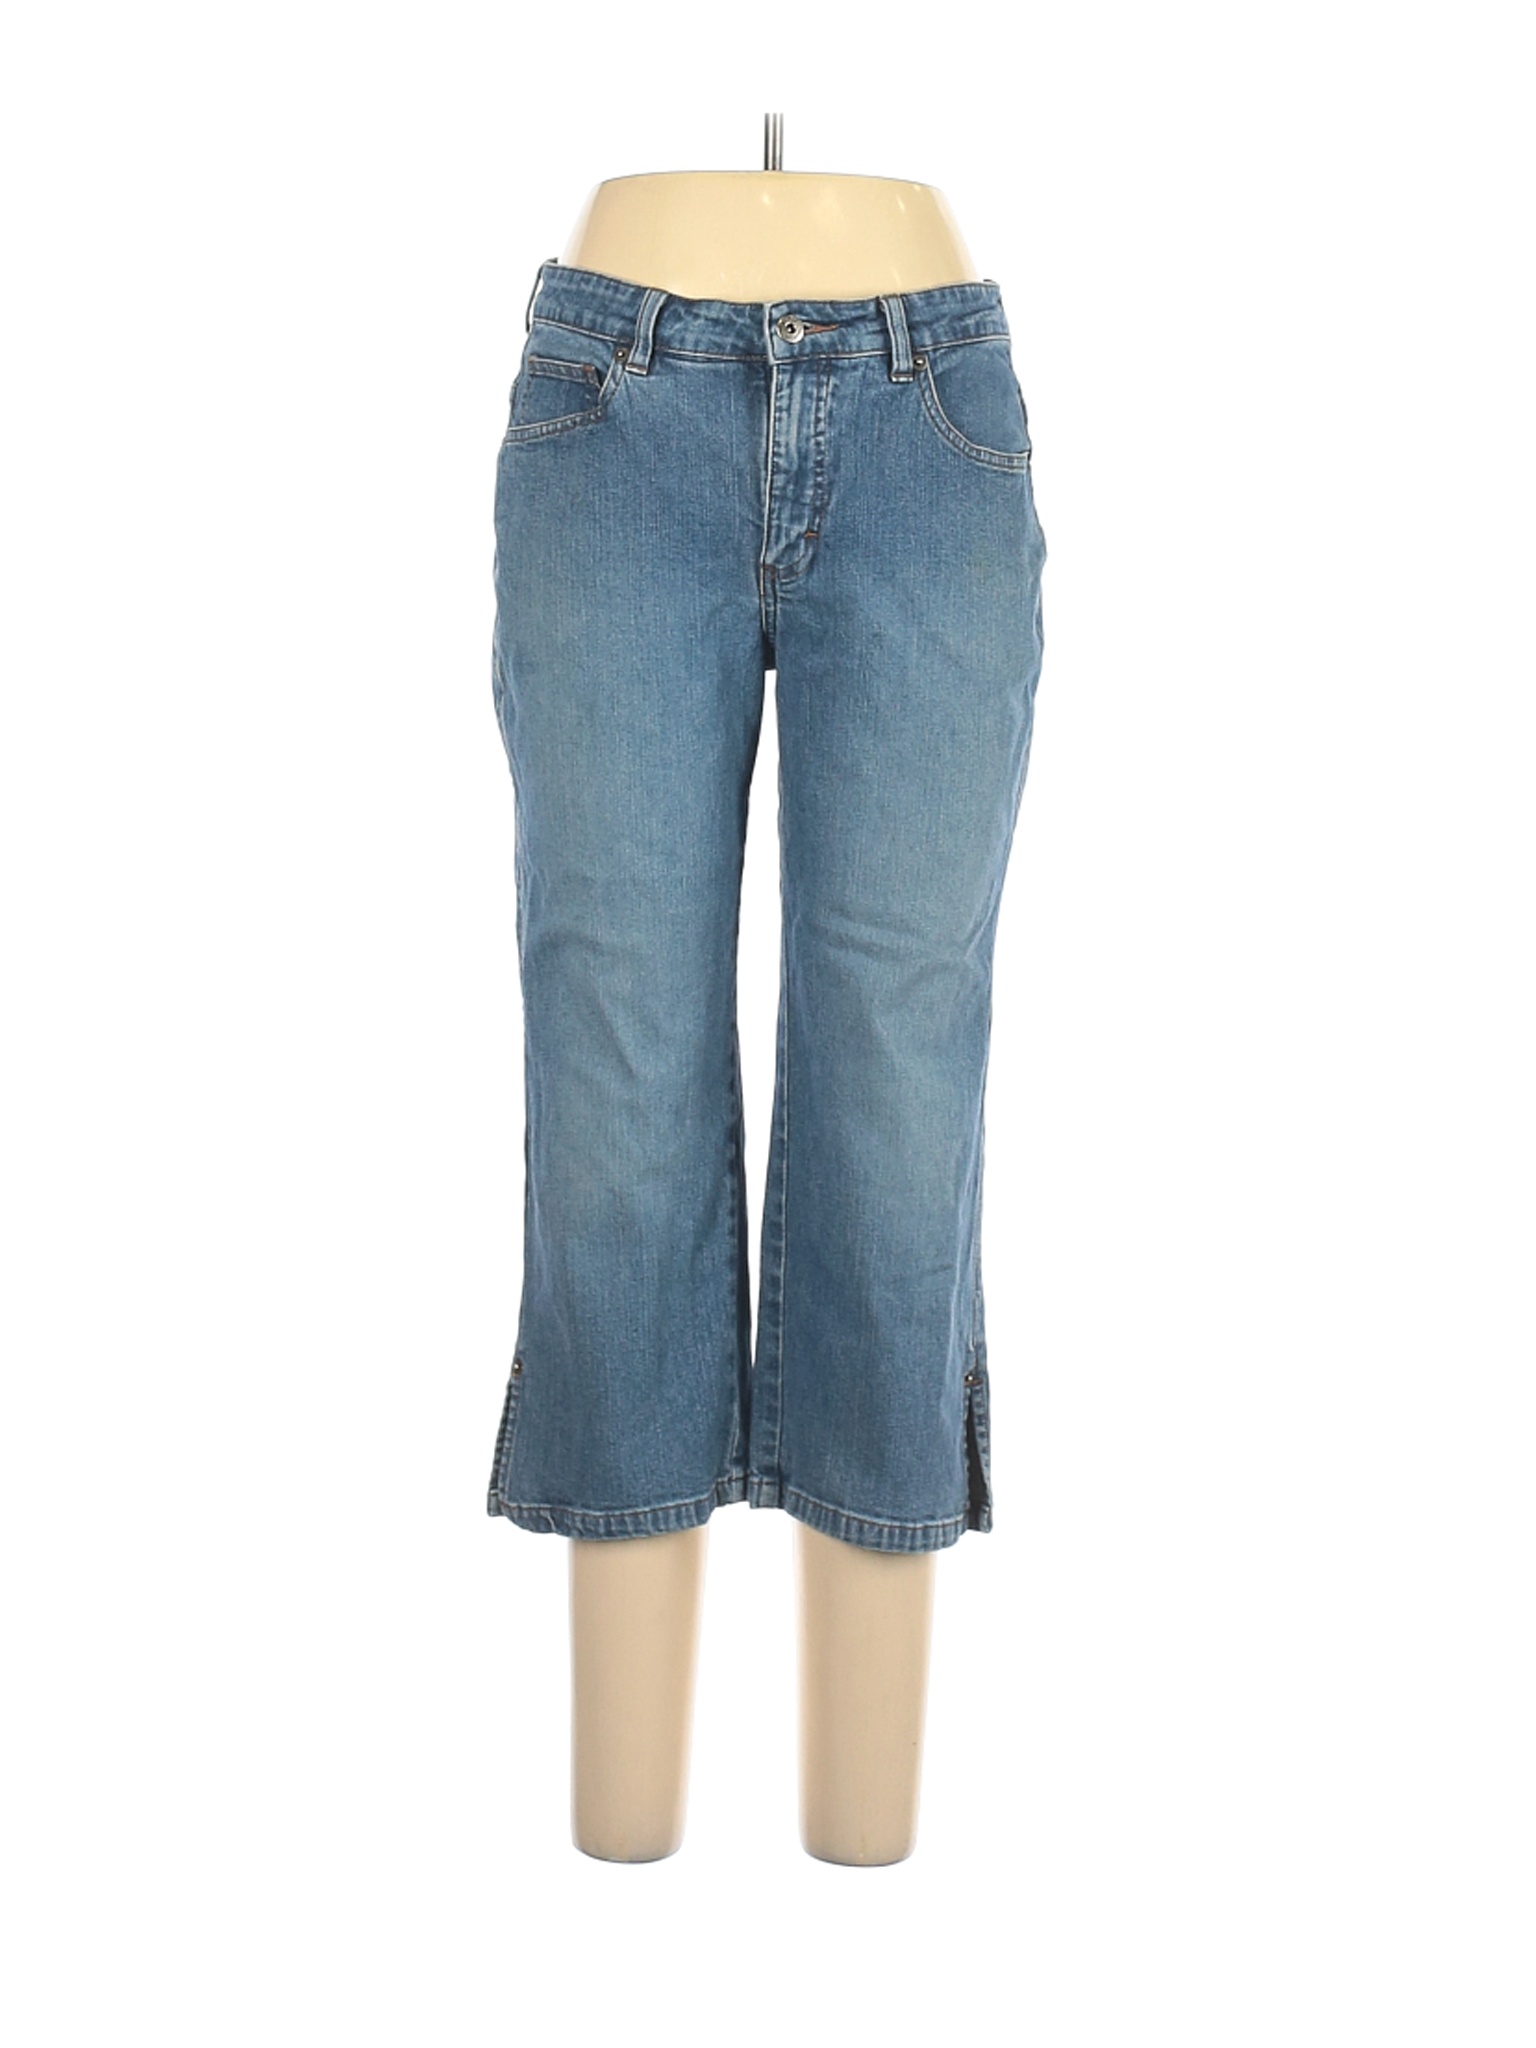 Lee Women Blue Jeans 12 | eBay